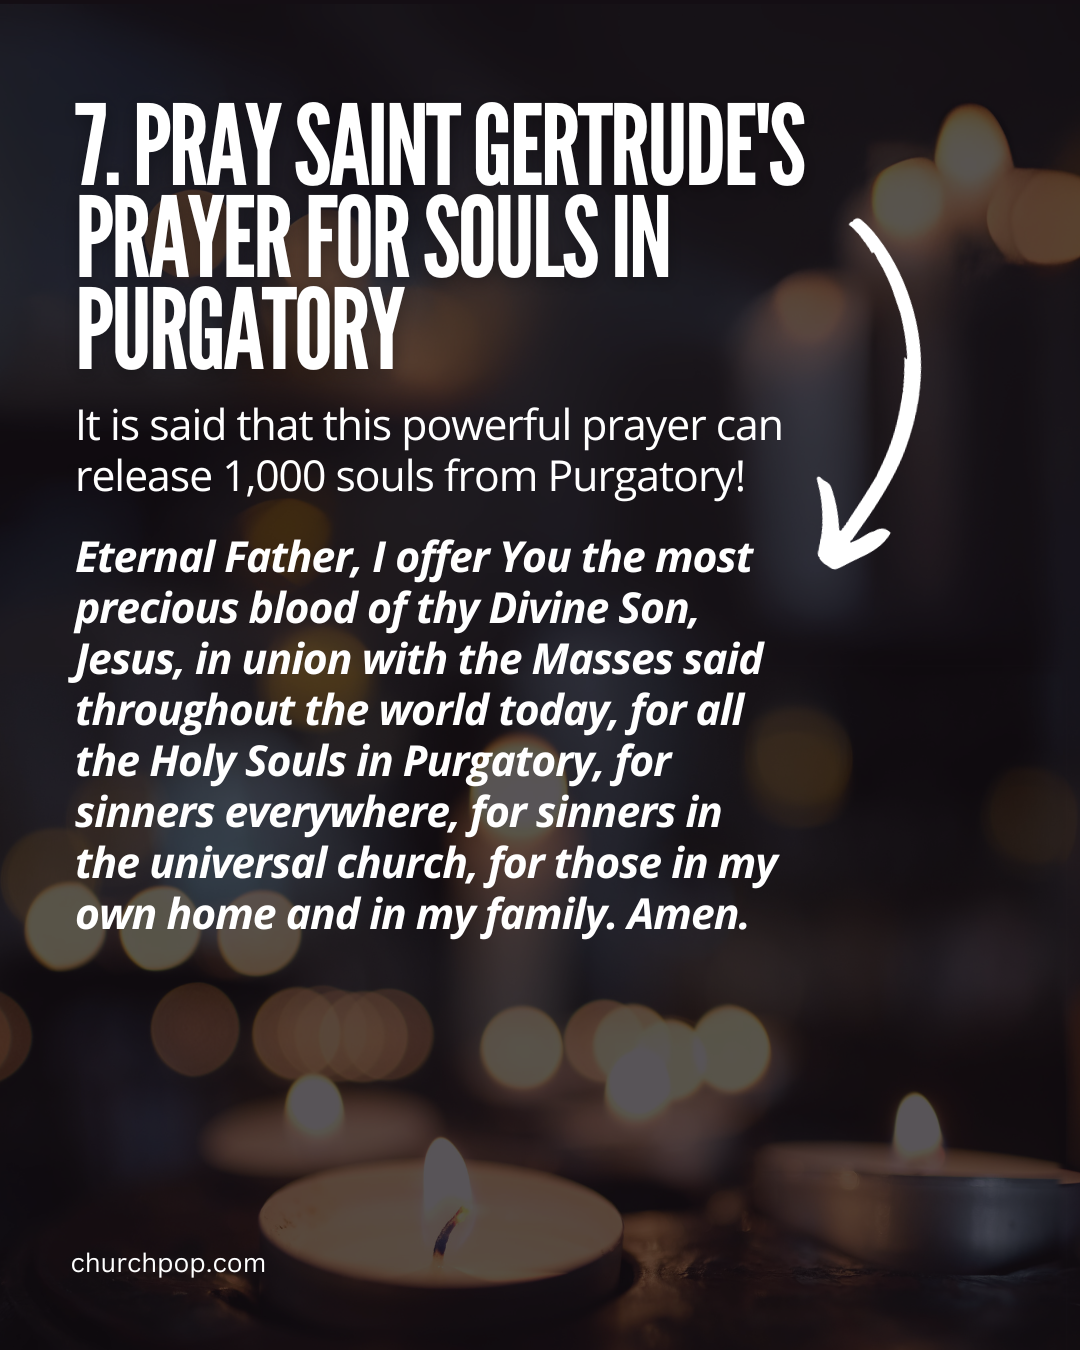 prayer of saint gertrude, saint gertrude, saint gertrude 1000 souls